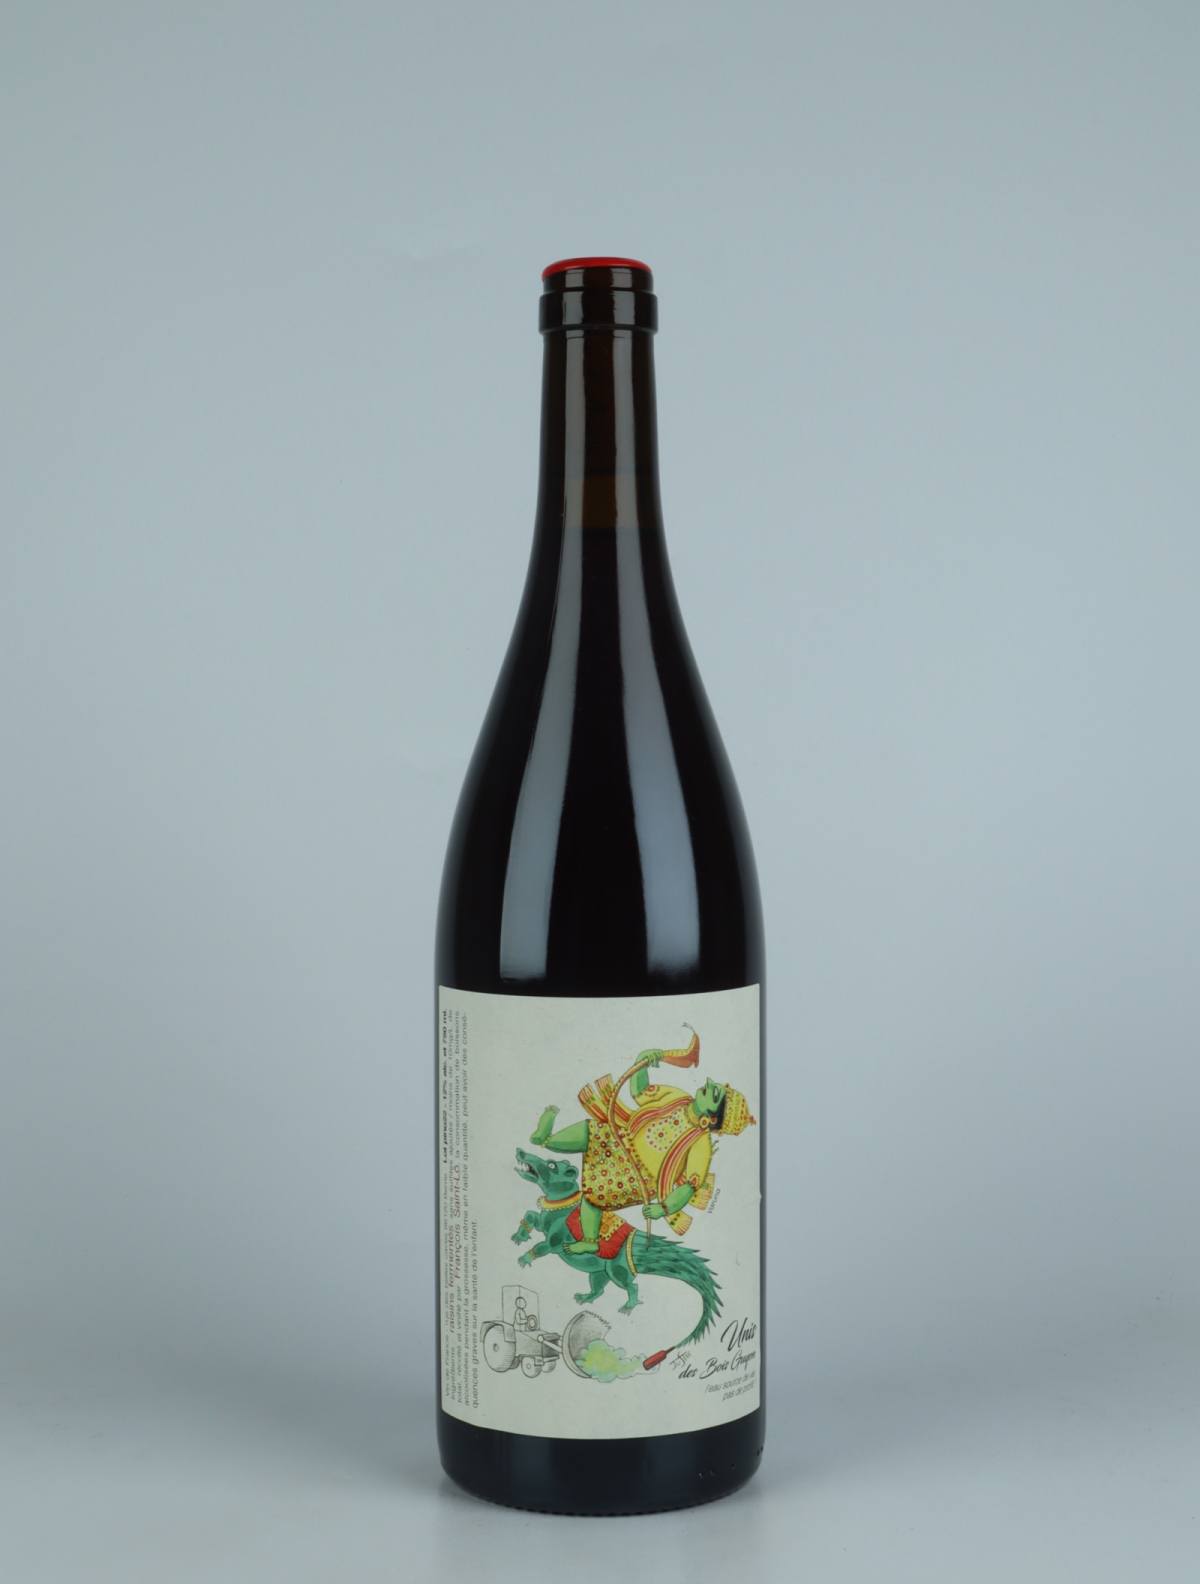 A bottle 2022 Unis des Bois Guyon Red wine from François Saint-Lô, Loire in France